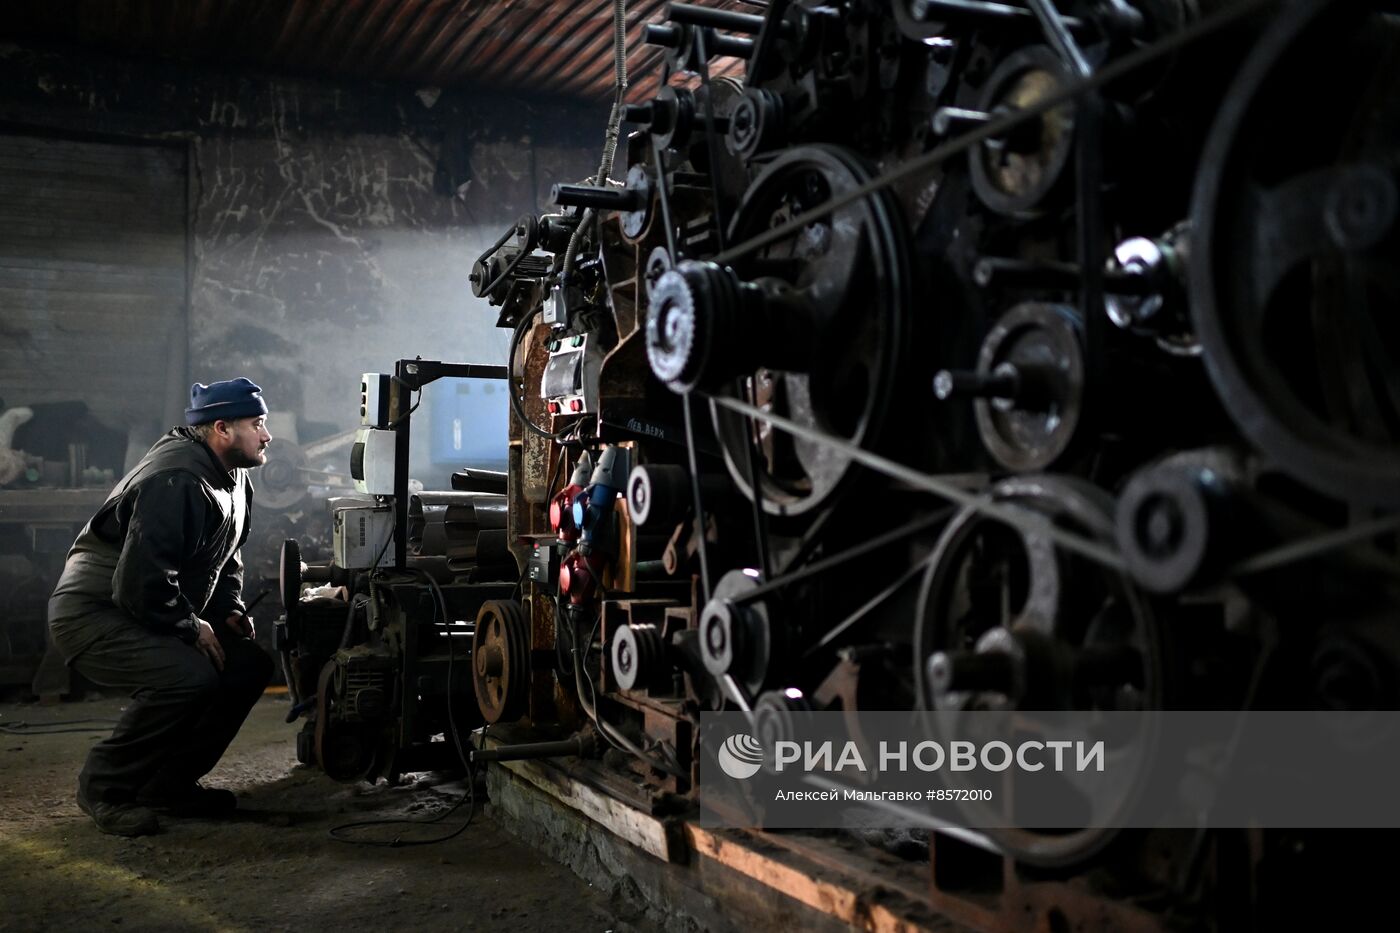 Производство валенок в Омске